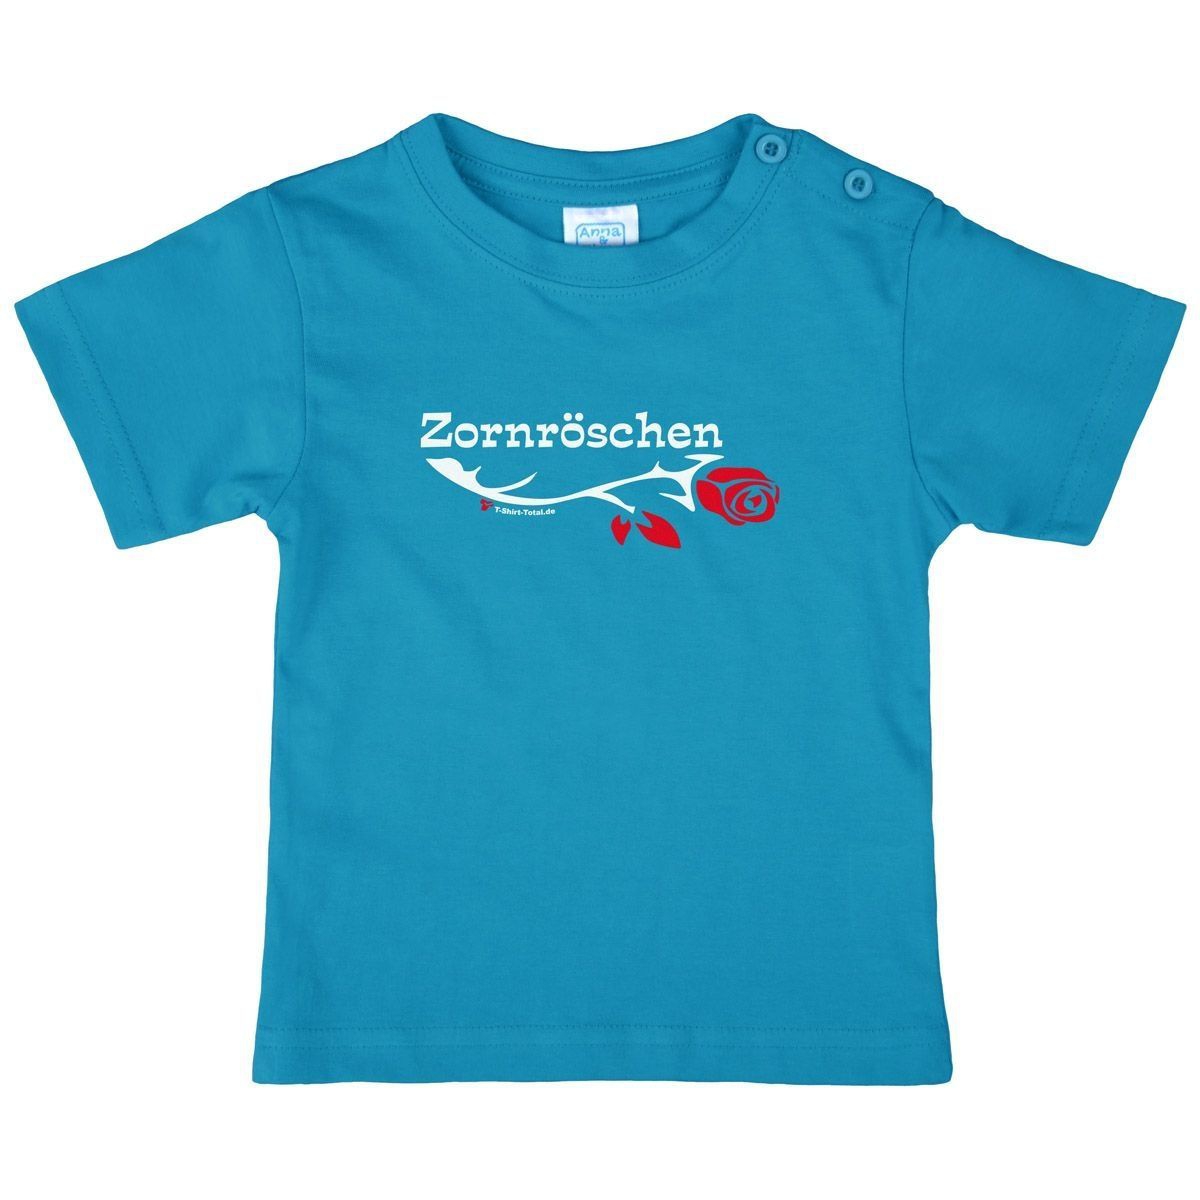 Zornröschen Kinder T-Shirt türkis 80 / 86